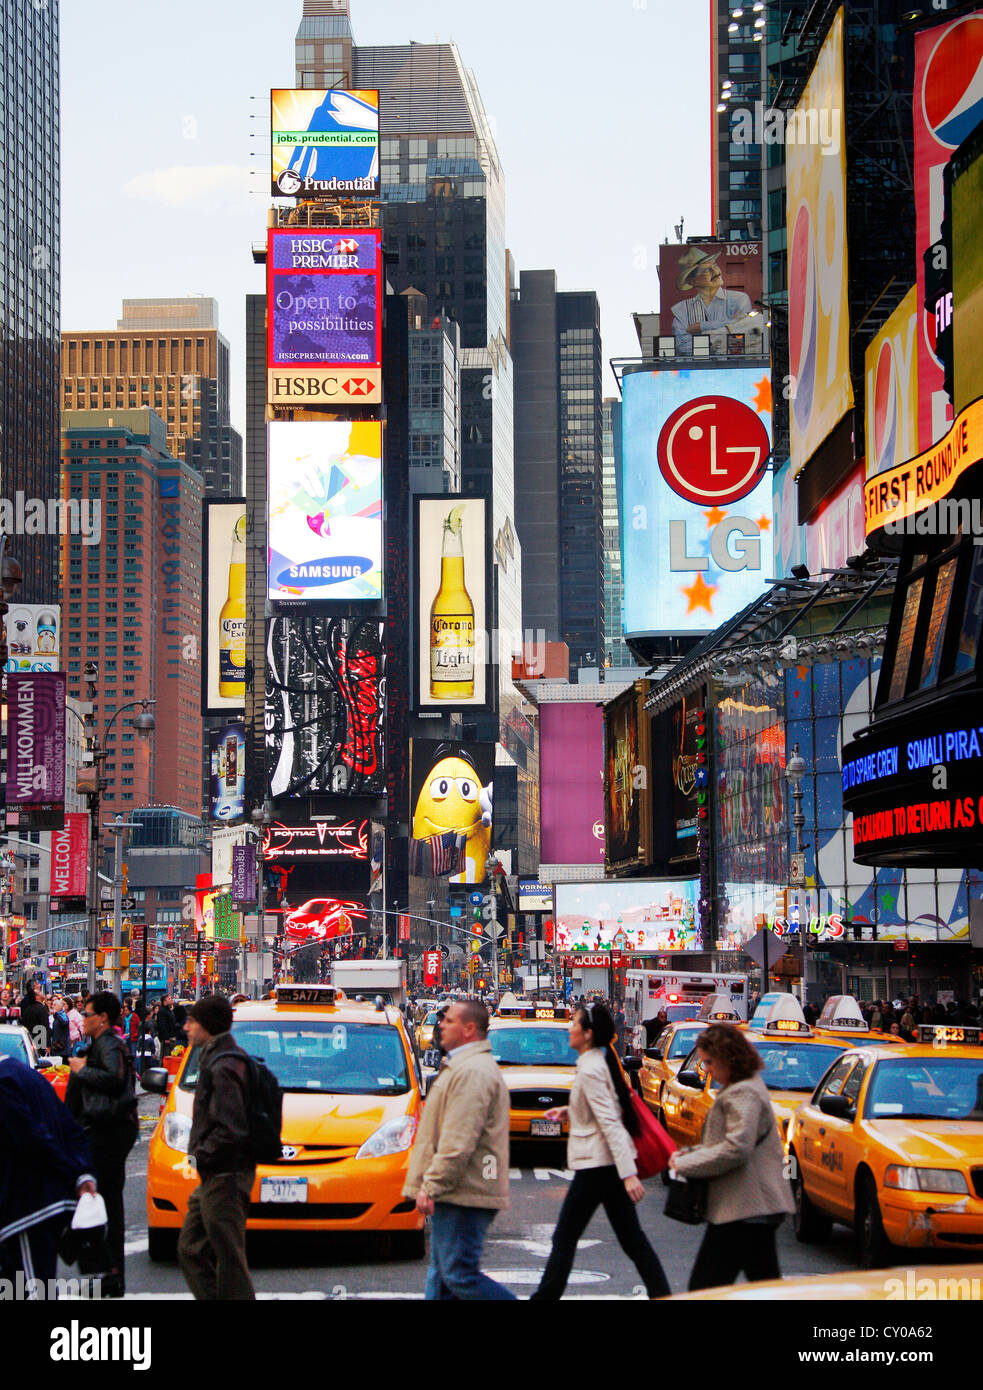 Times Square avec la publicité et les touristes, la ville de New York, New York, United States, Amérique du Nord Banque D'Images